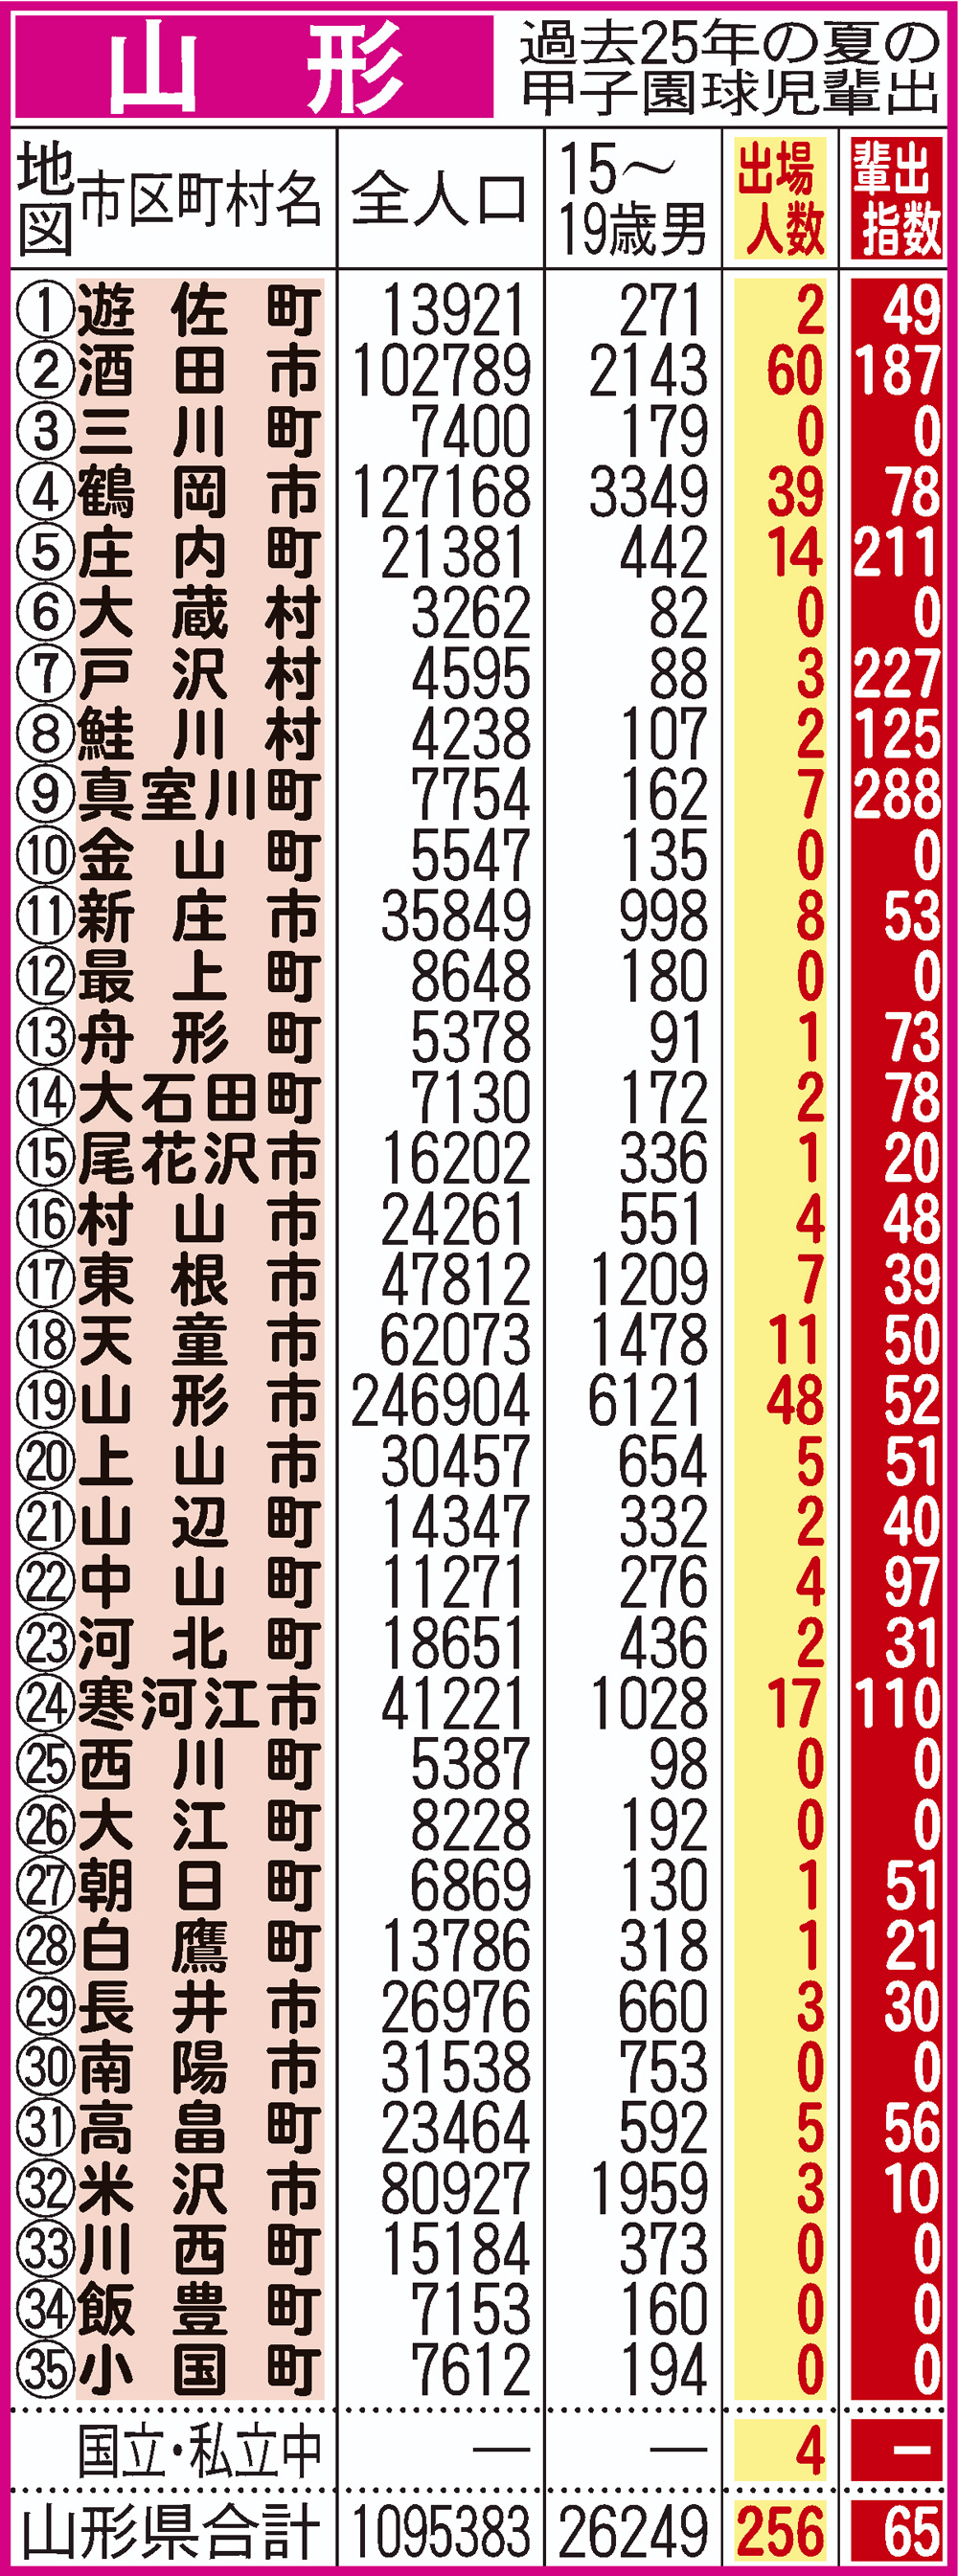 過去25年間における山形県地域別の甲子園輩出指数